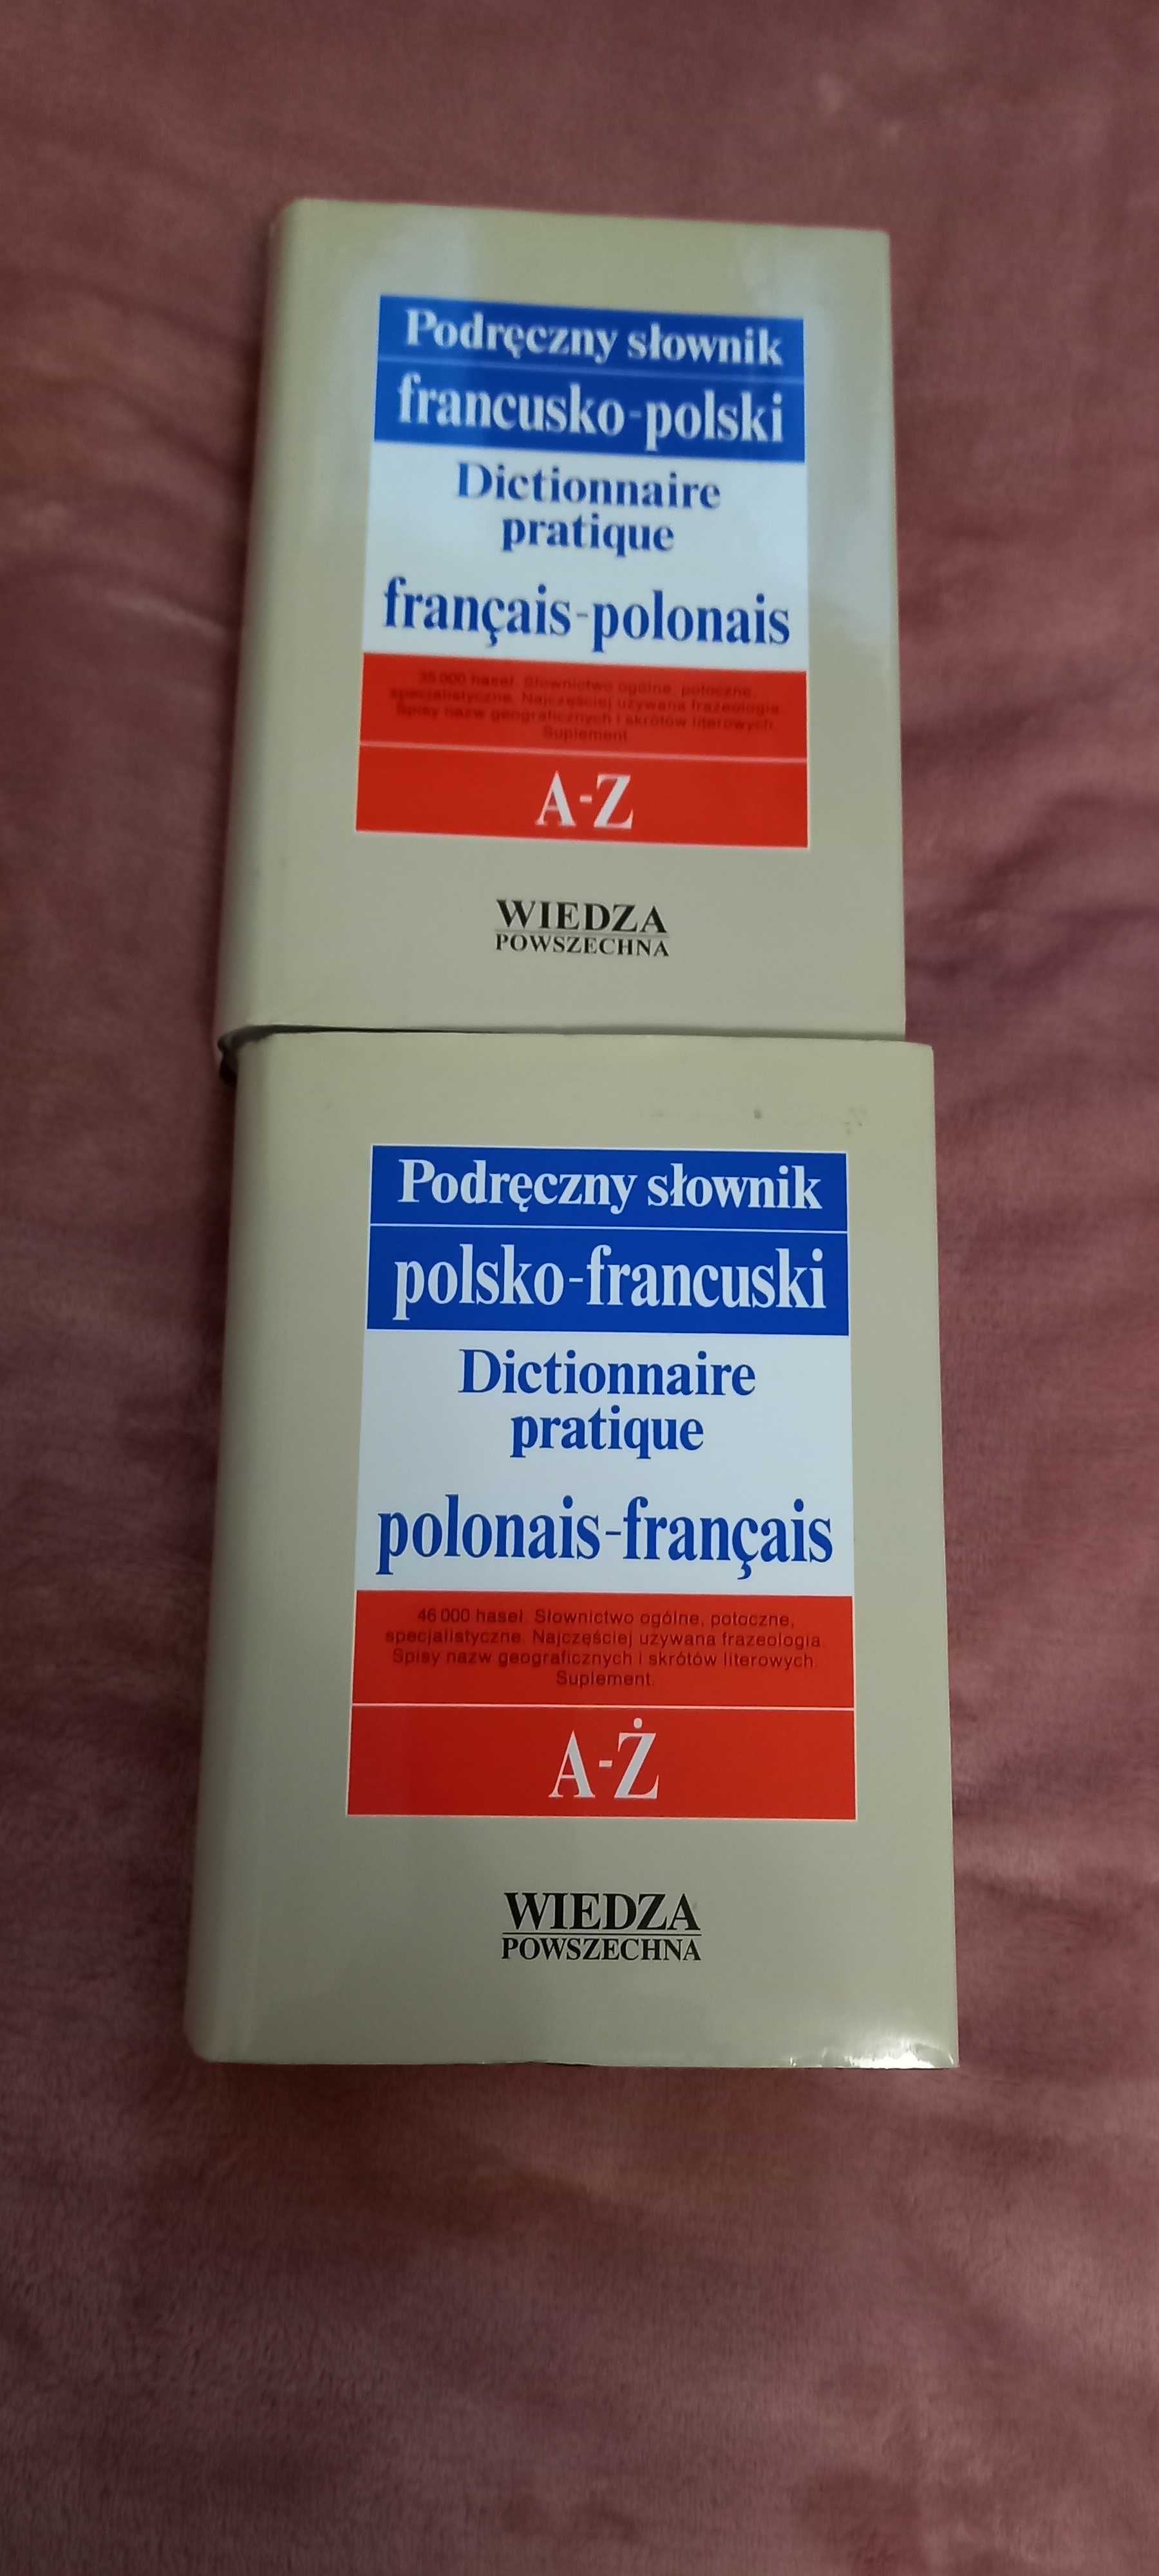 Podręczne słowniki francusko-polski i pol.-fran. I czasow. fran.